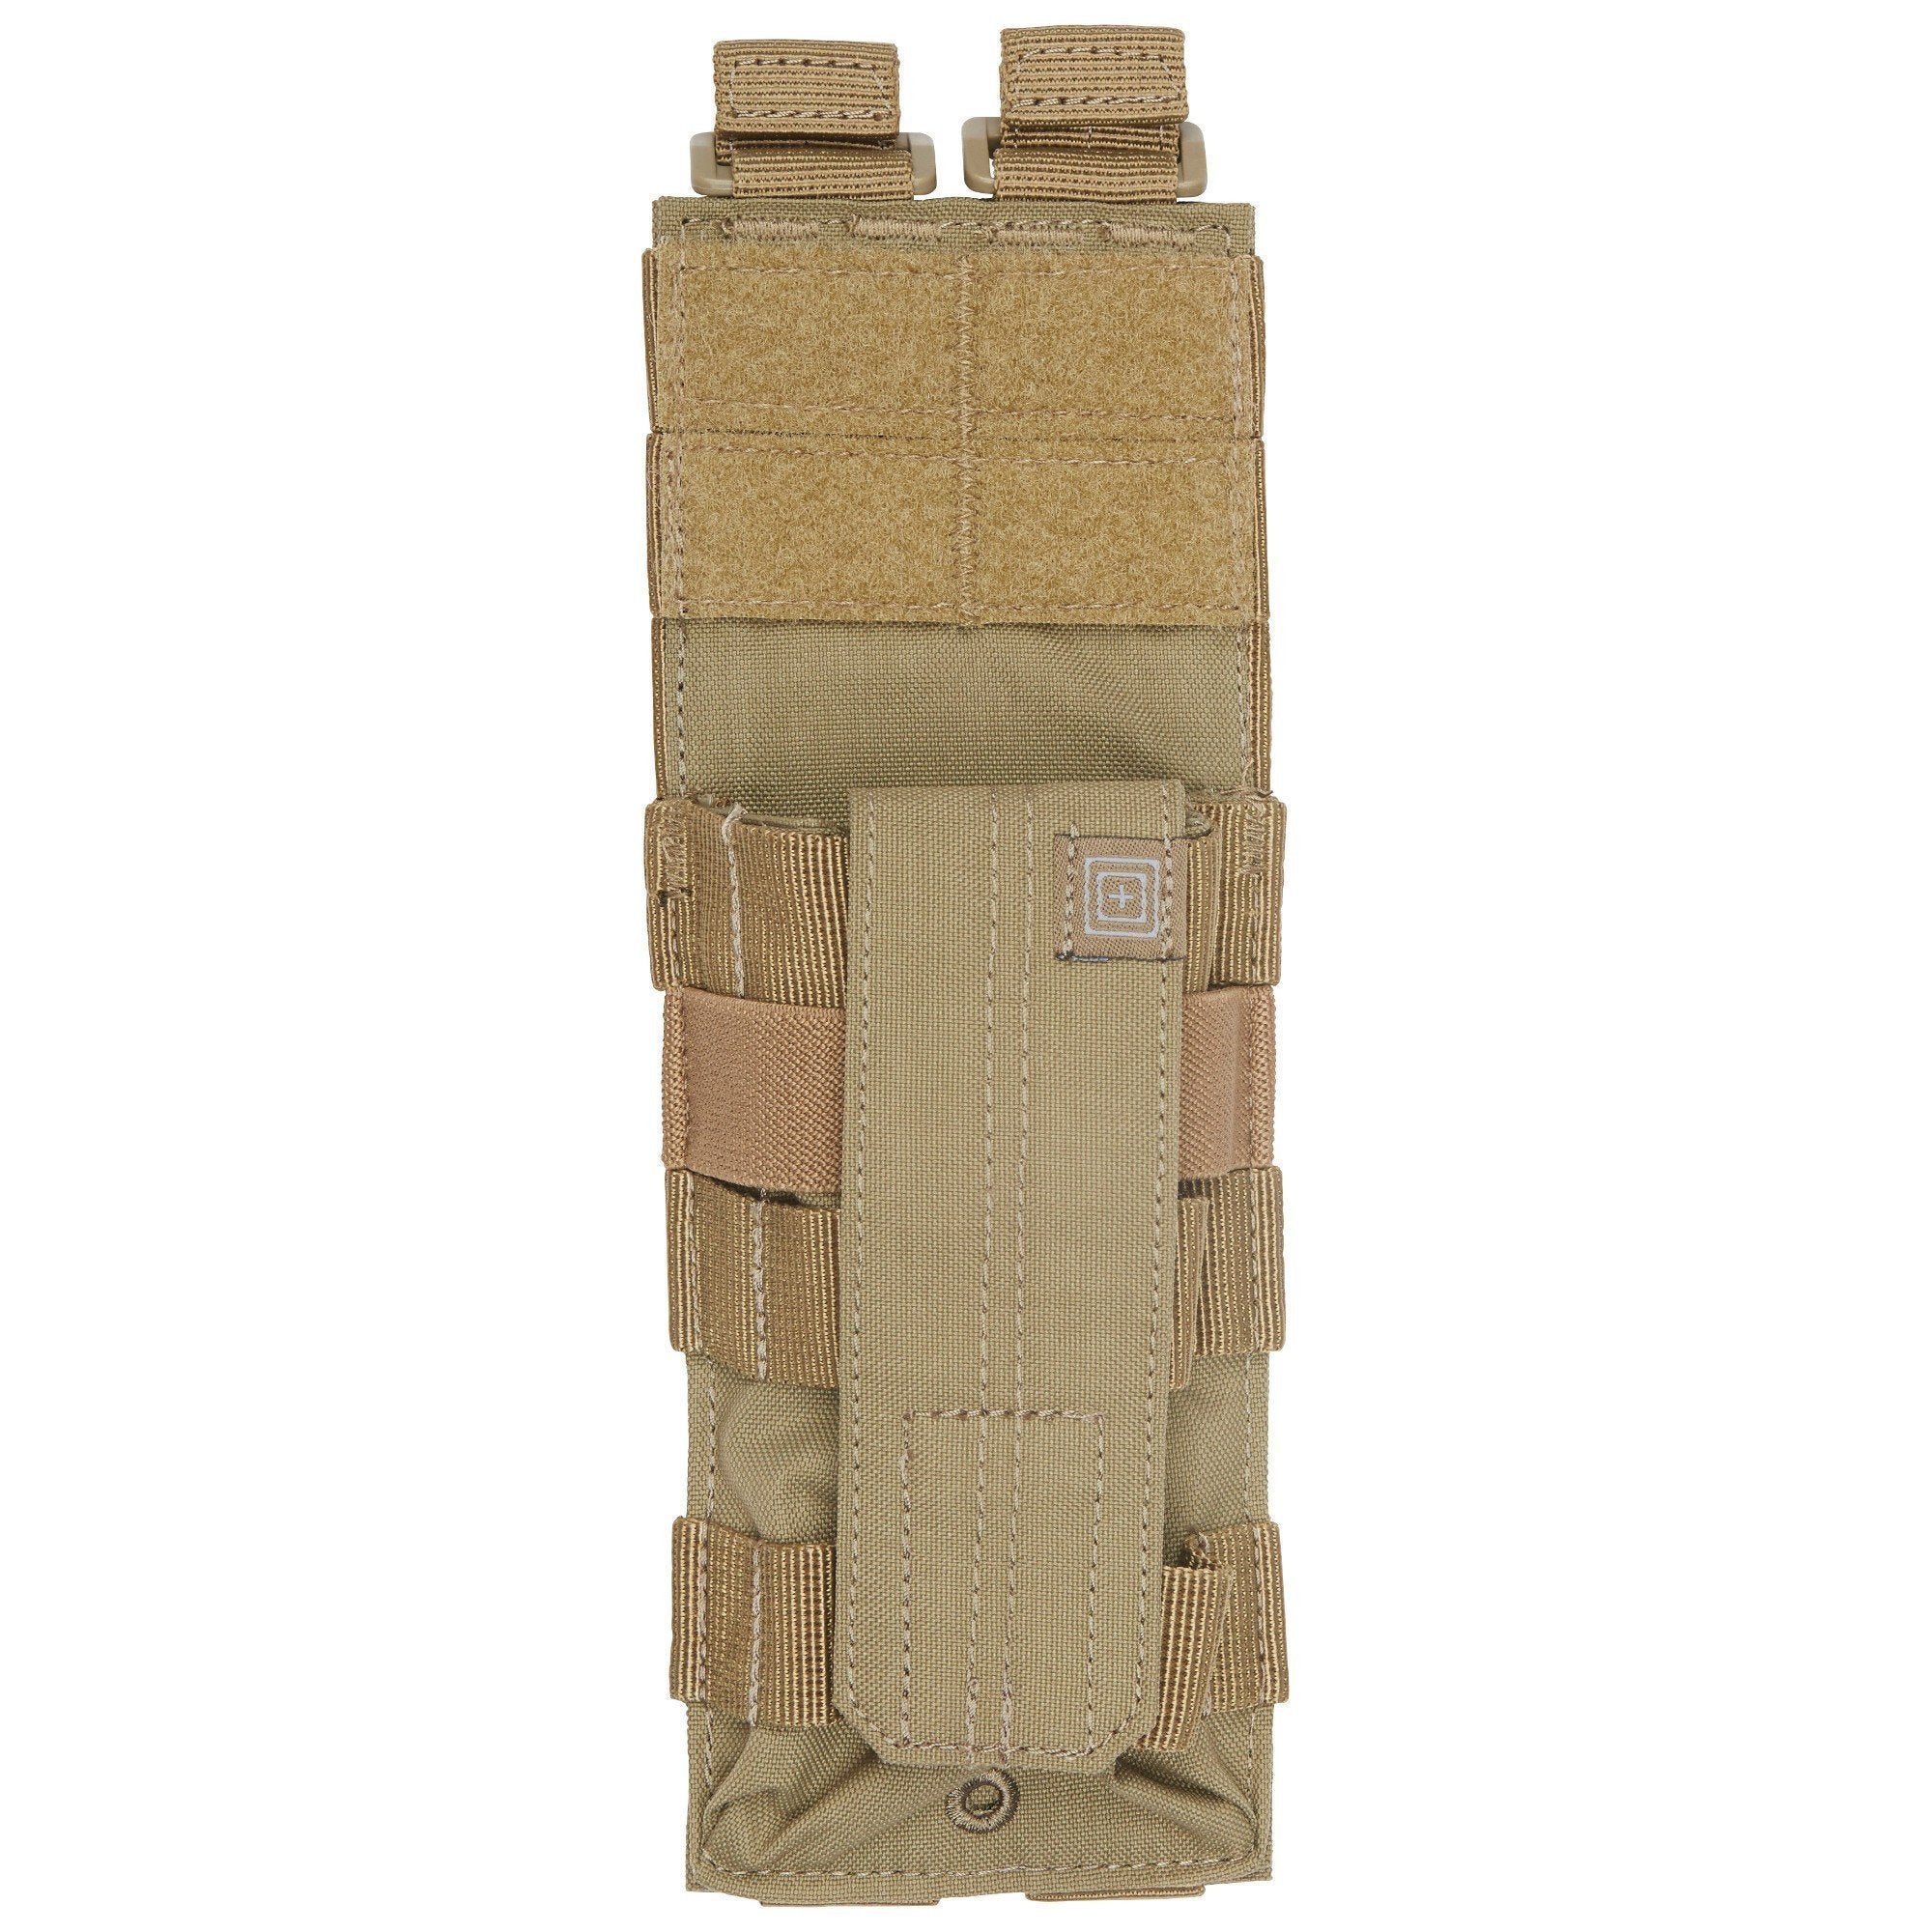 5.11 Tactical Rigid Cuff Case Accessories 5.11 Tactical Sandstone Tactical Gear Supplier Tactical Distributors Australia